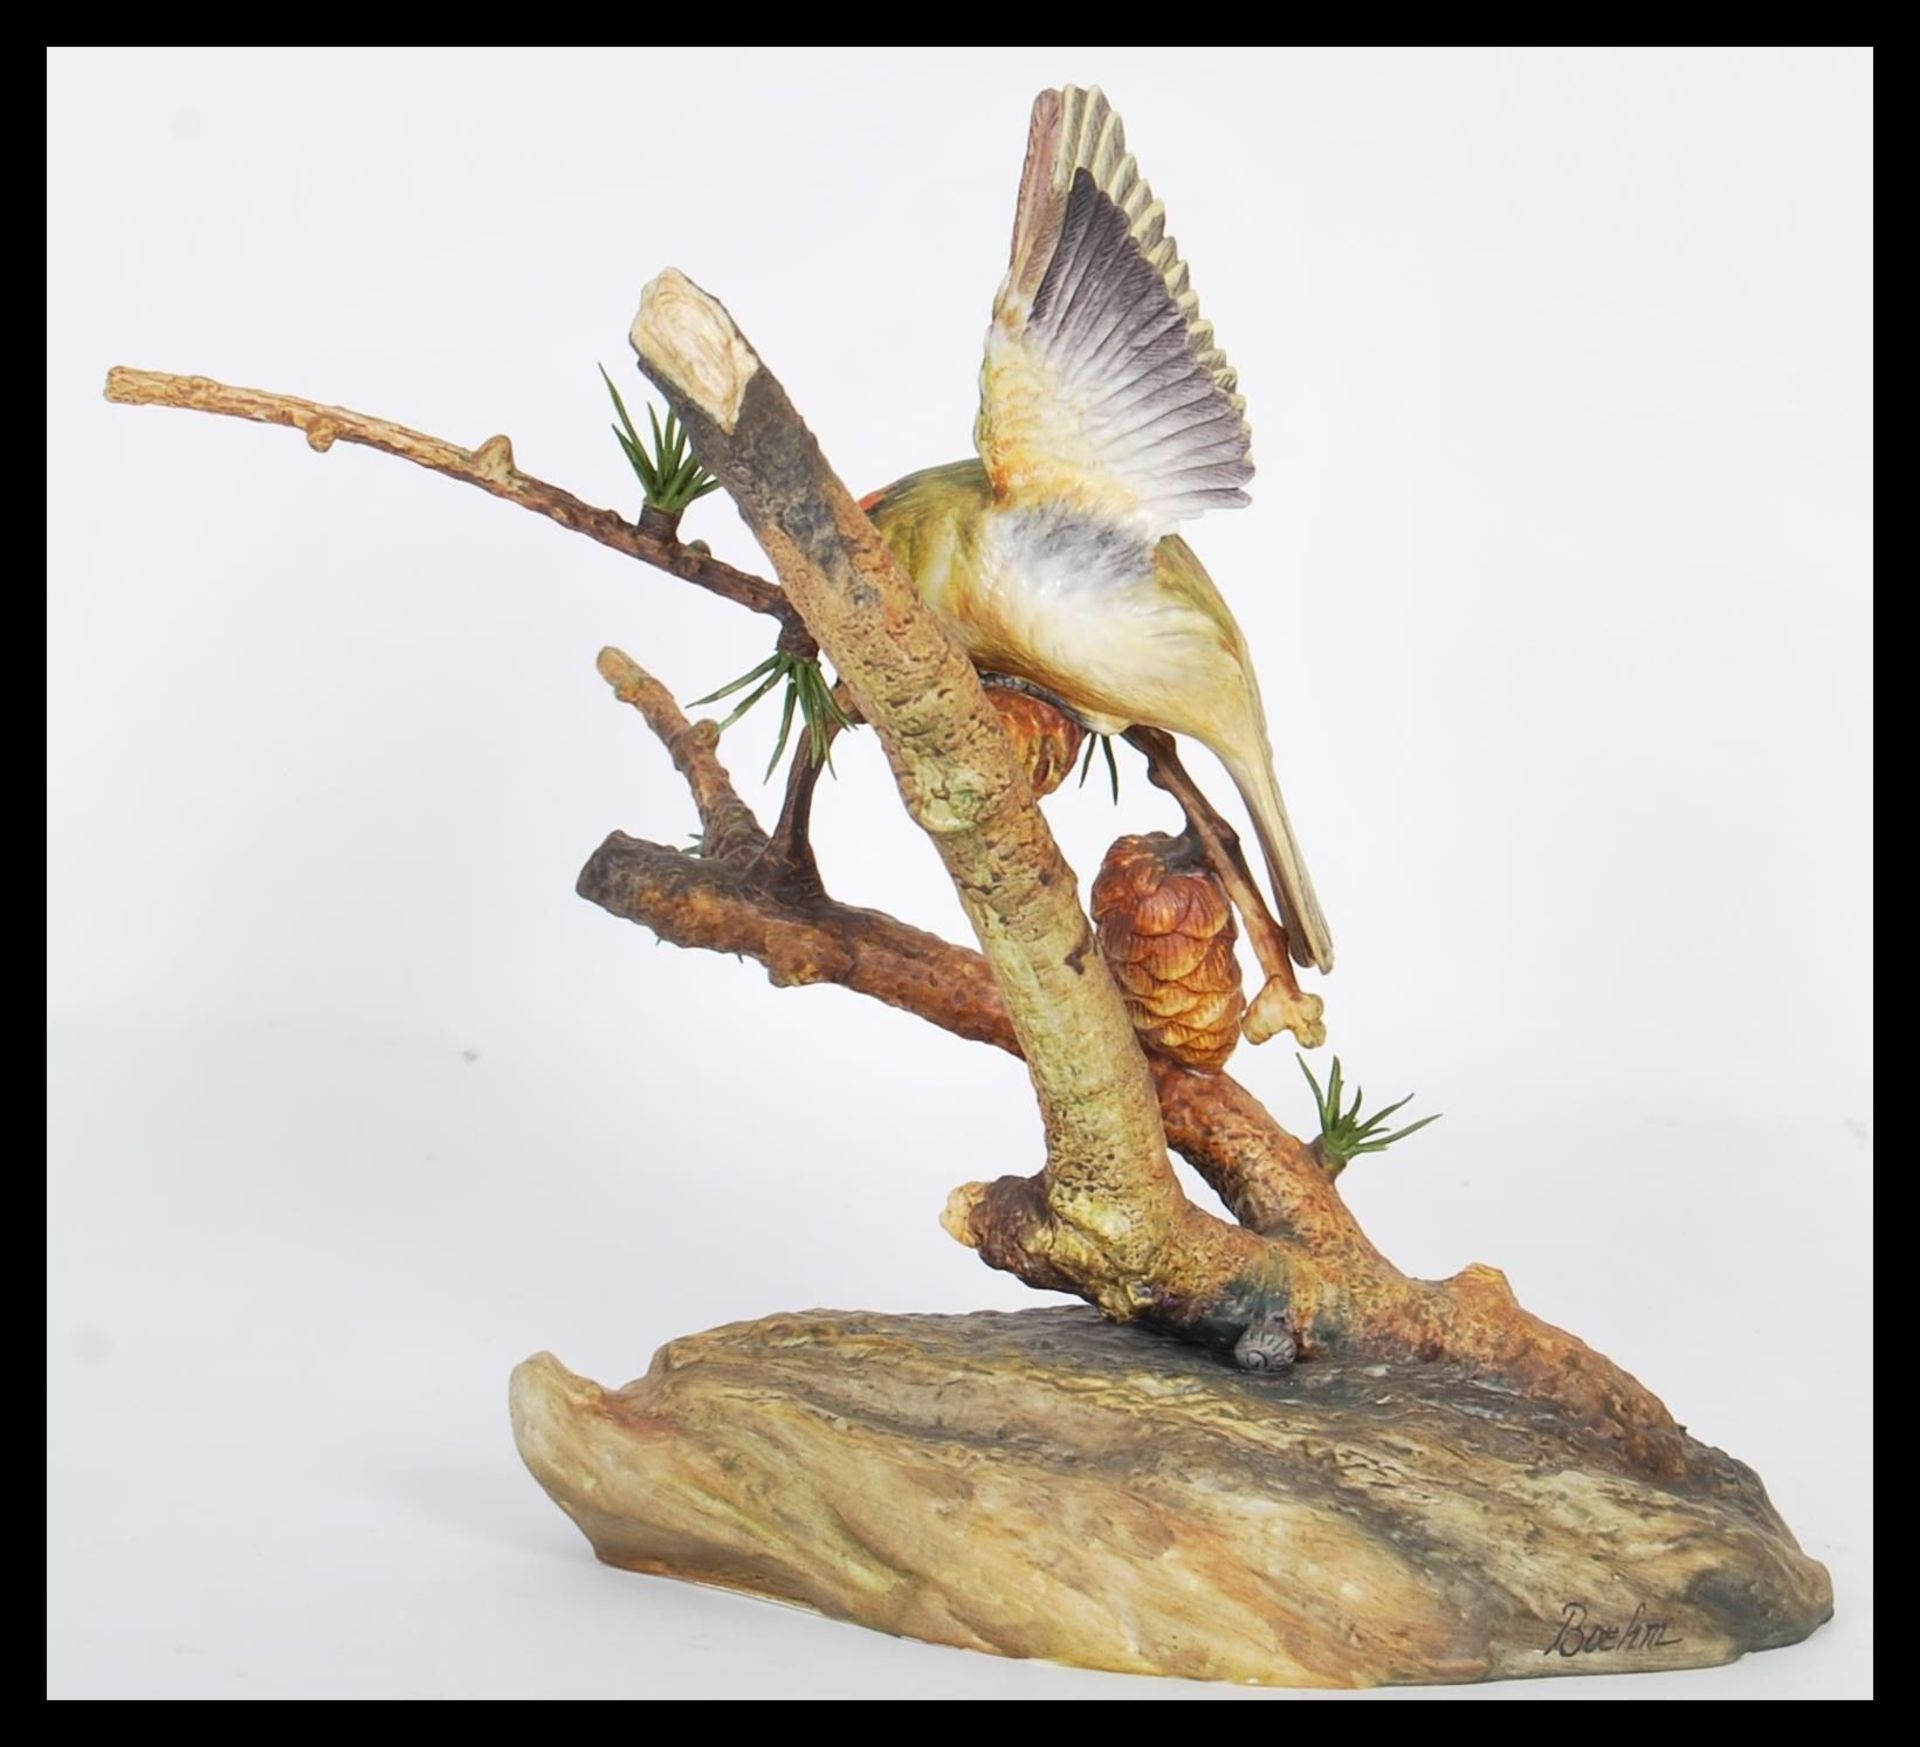 A vintage 20th Century Boehm porcelain limited edition bird figurine depicting a Marsh Tit perched - Bild 2 aus 5